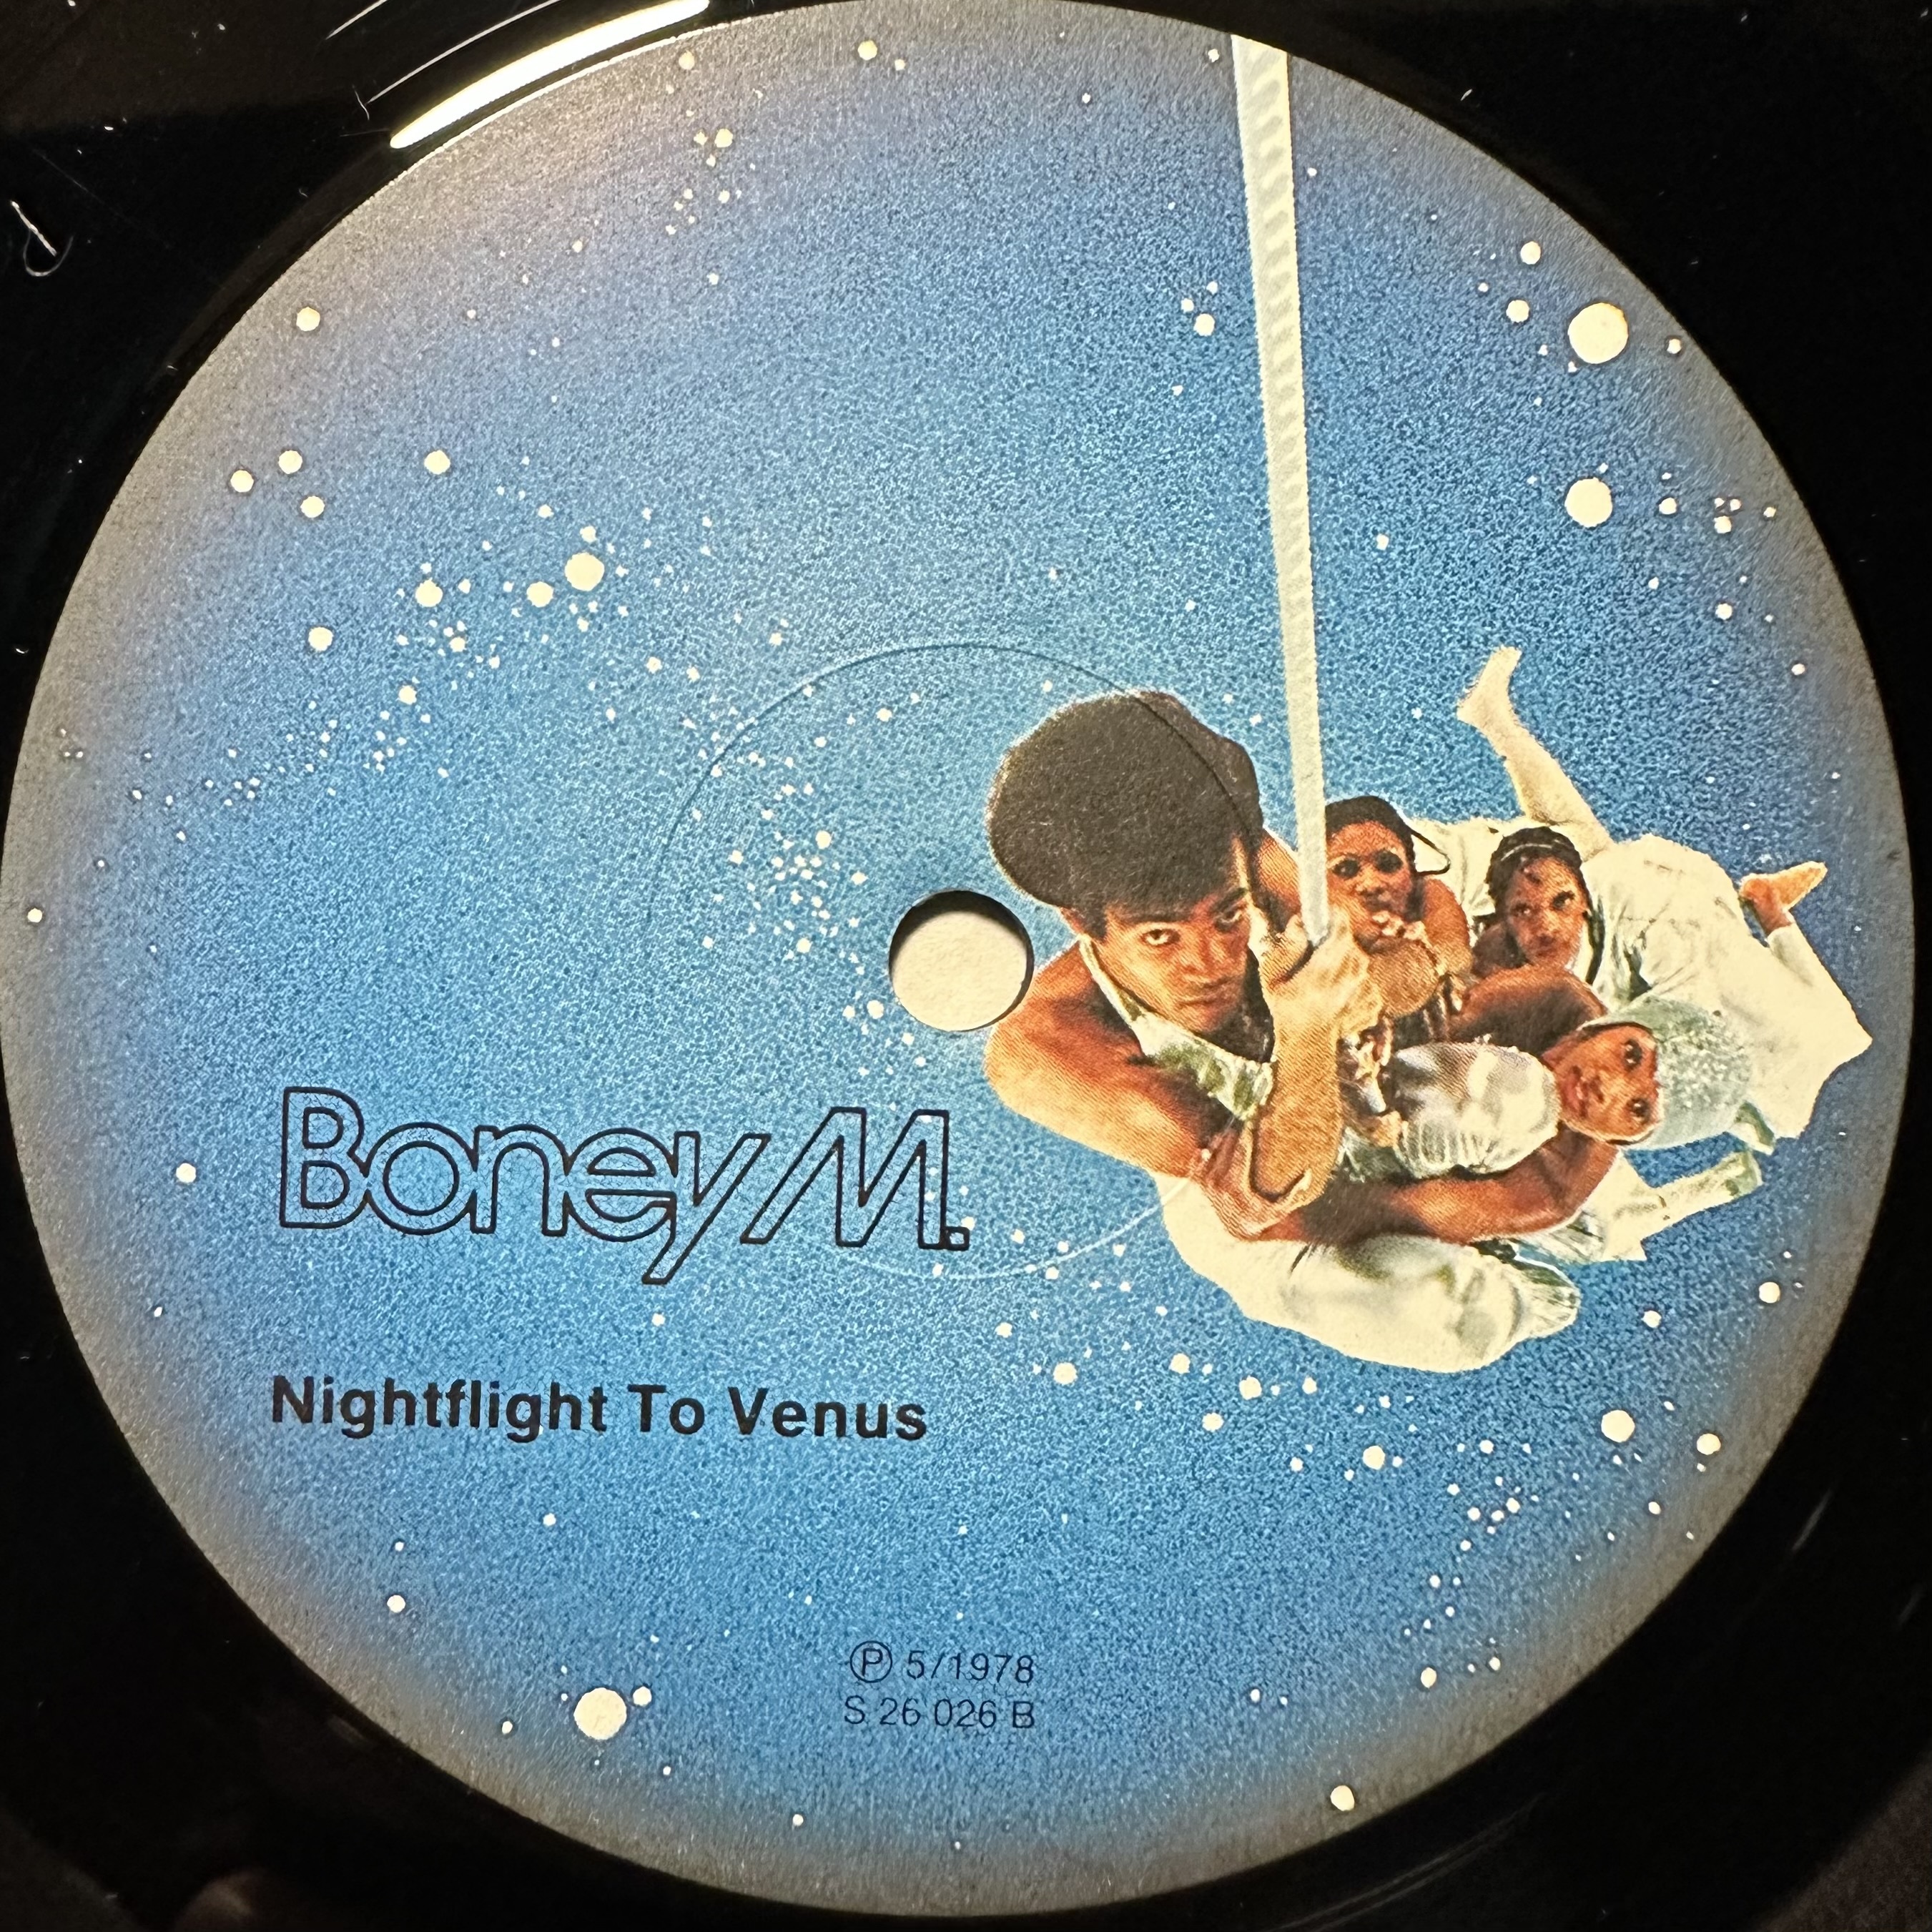 Boney m nightflight. 1978 - Nightflight to Venus. Boney m Nightflight to Venus 1978. Boney m Nightflight to Venus CD. Boney m Nightflight to Venus 1978 альбом.